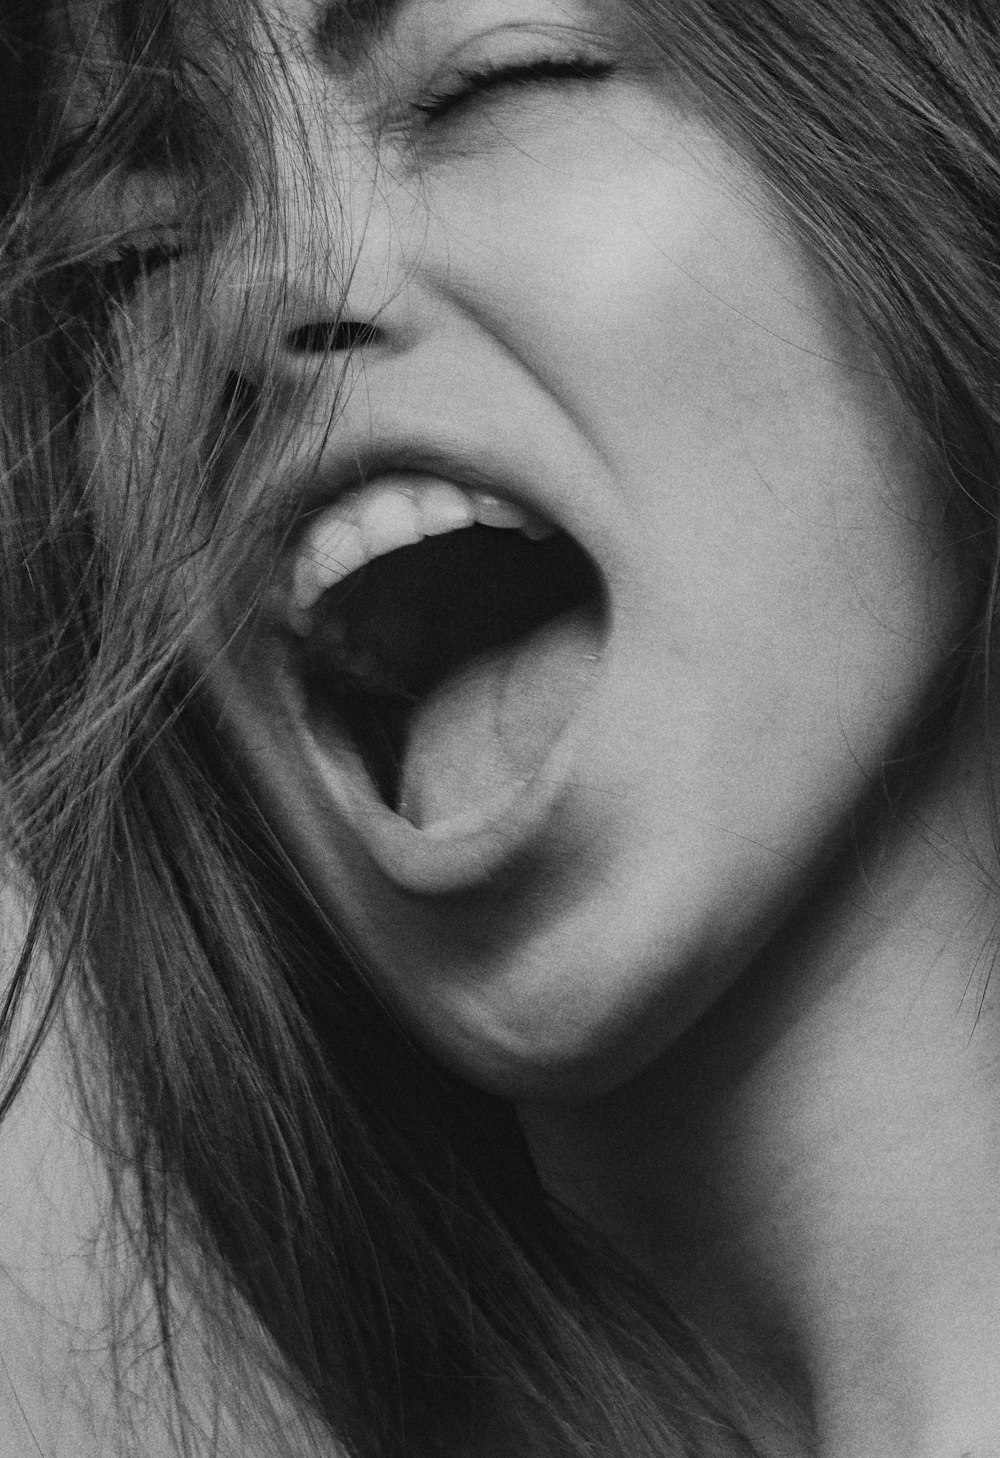 foto in scala di grigi della bocca della donna